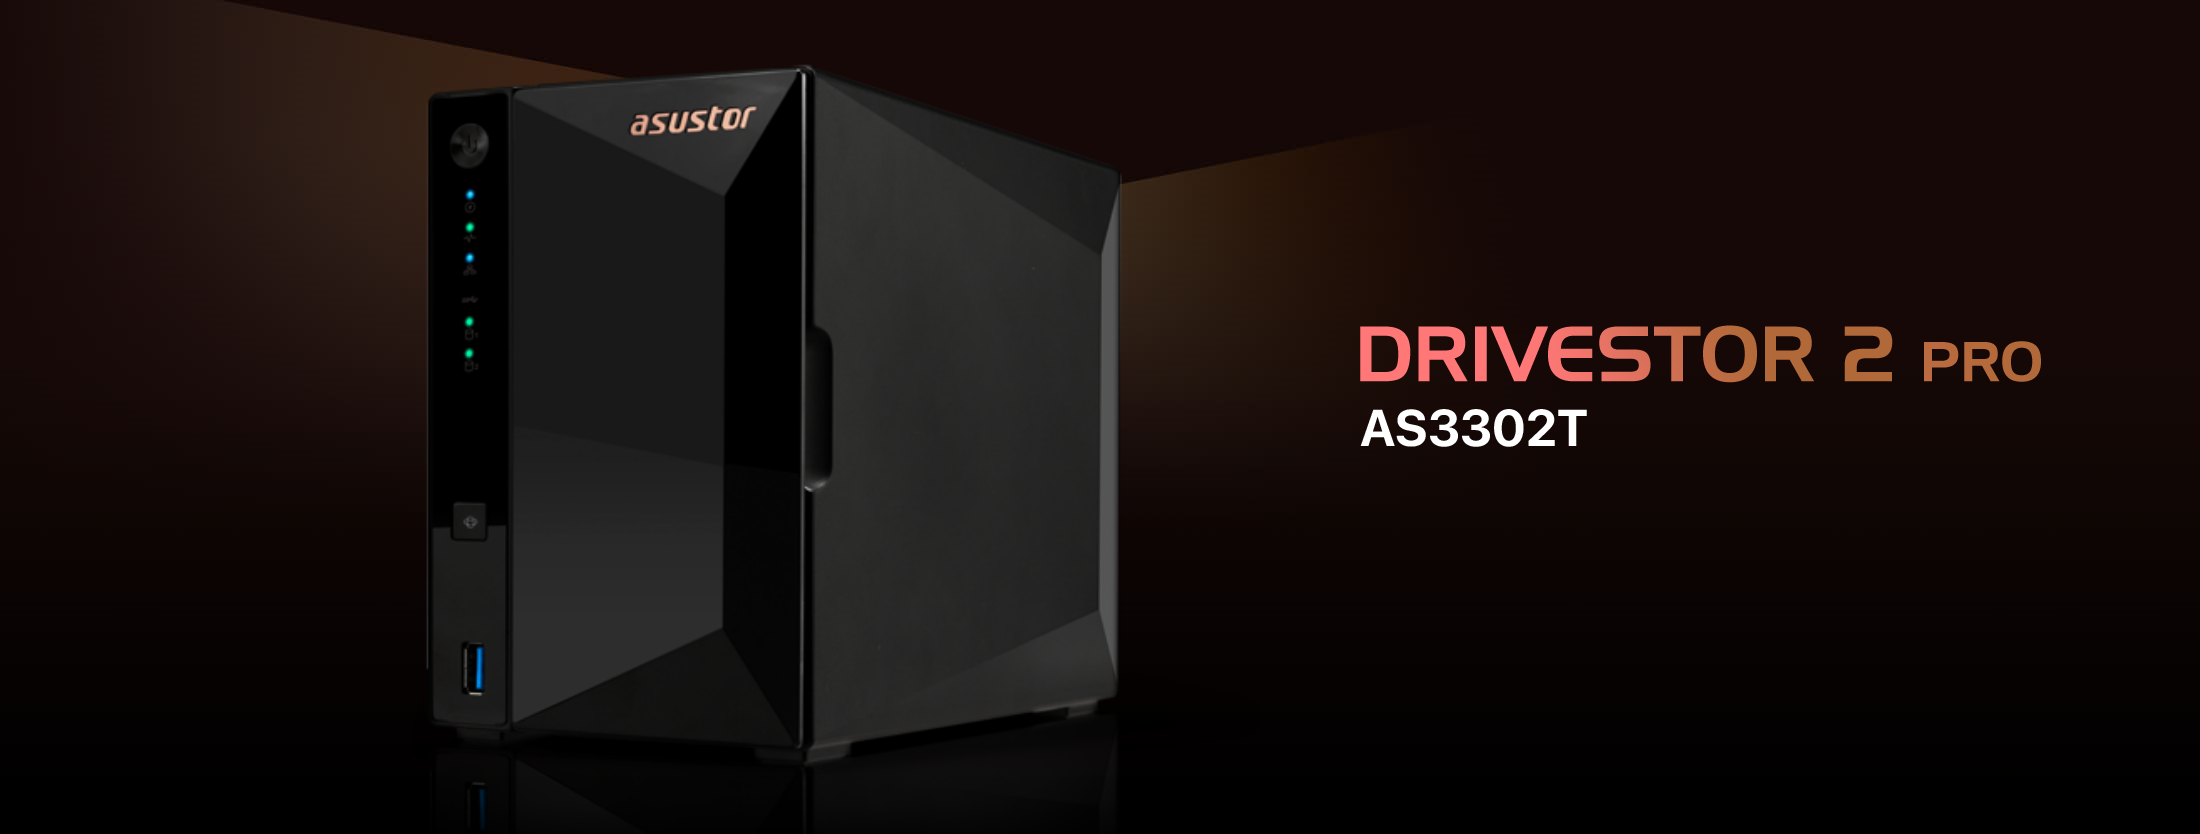 DRIVESTOR 2 Pro (AS3302T)｜ASUSTOR｜株式会社アユート PCパーツ・VR